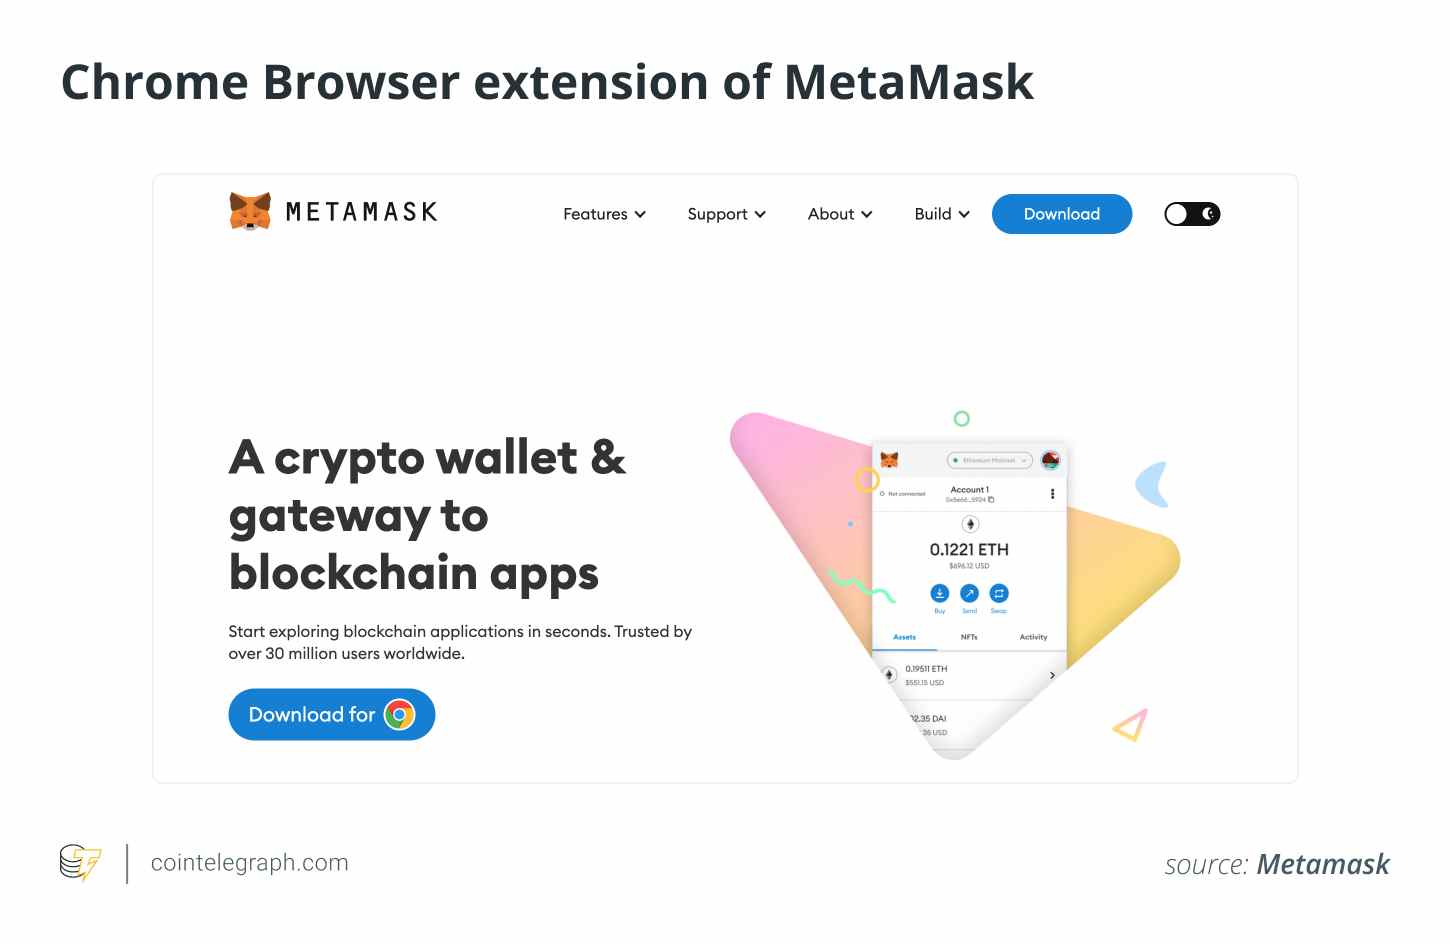 Chrome-Browsererweiterung von MetaMask